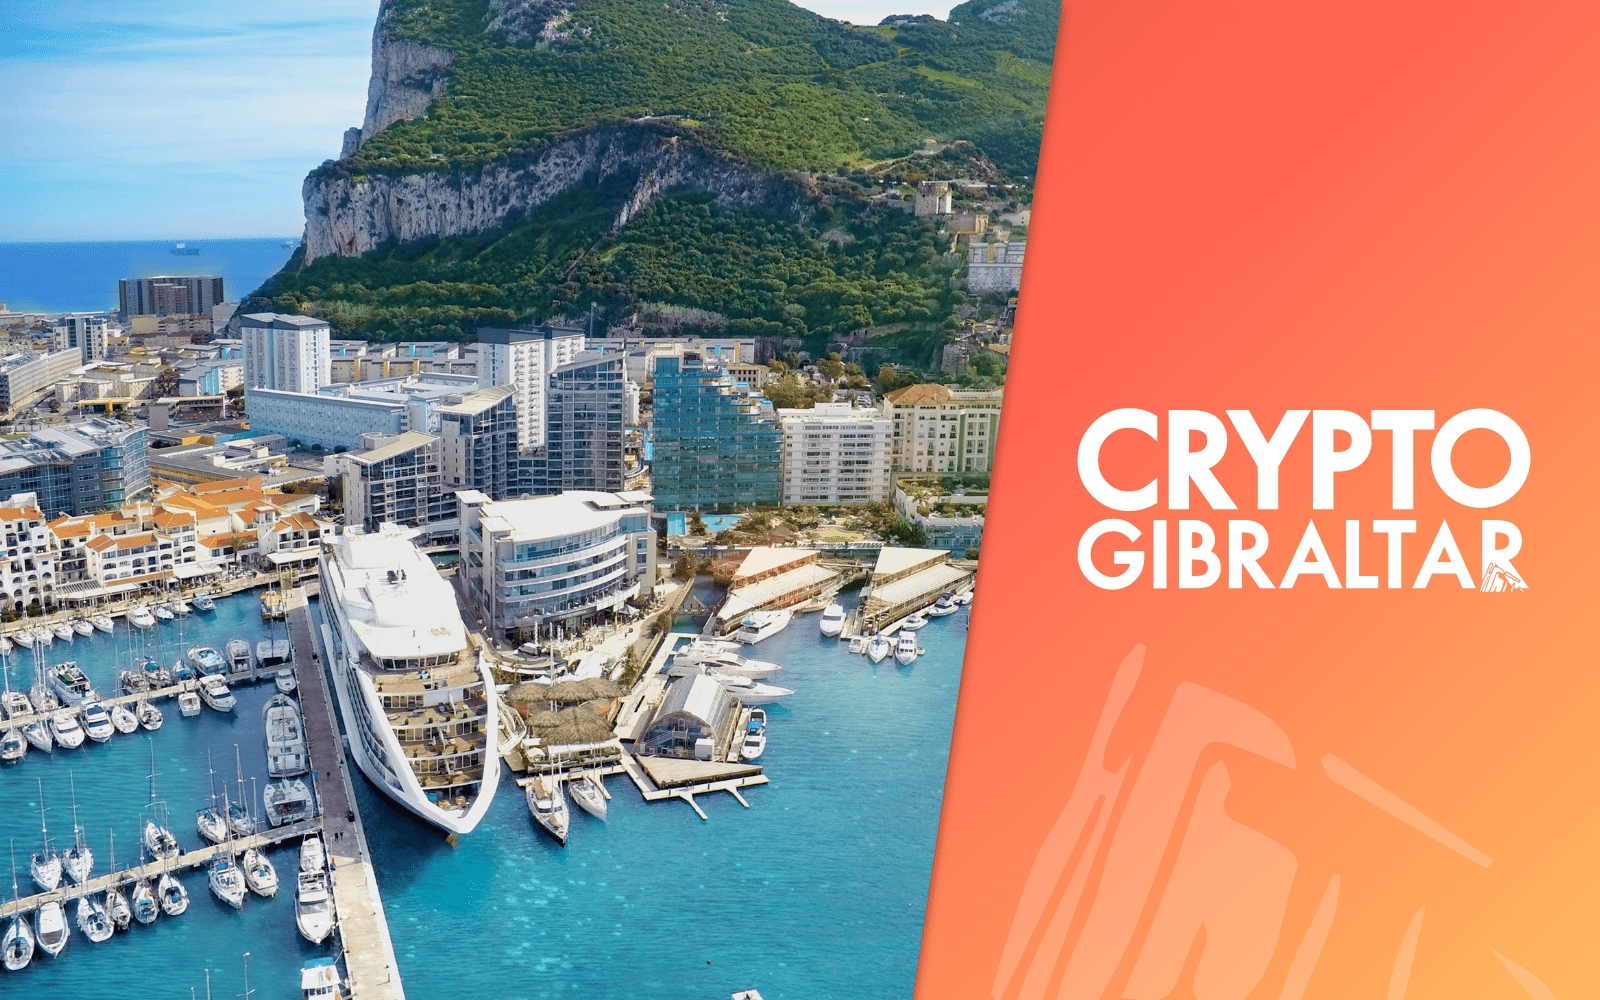 Crypto Gibraltar Image